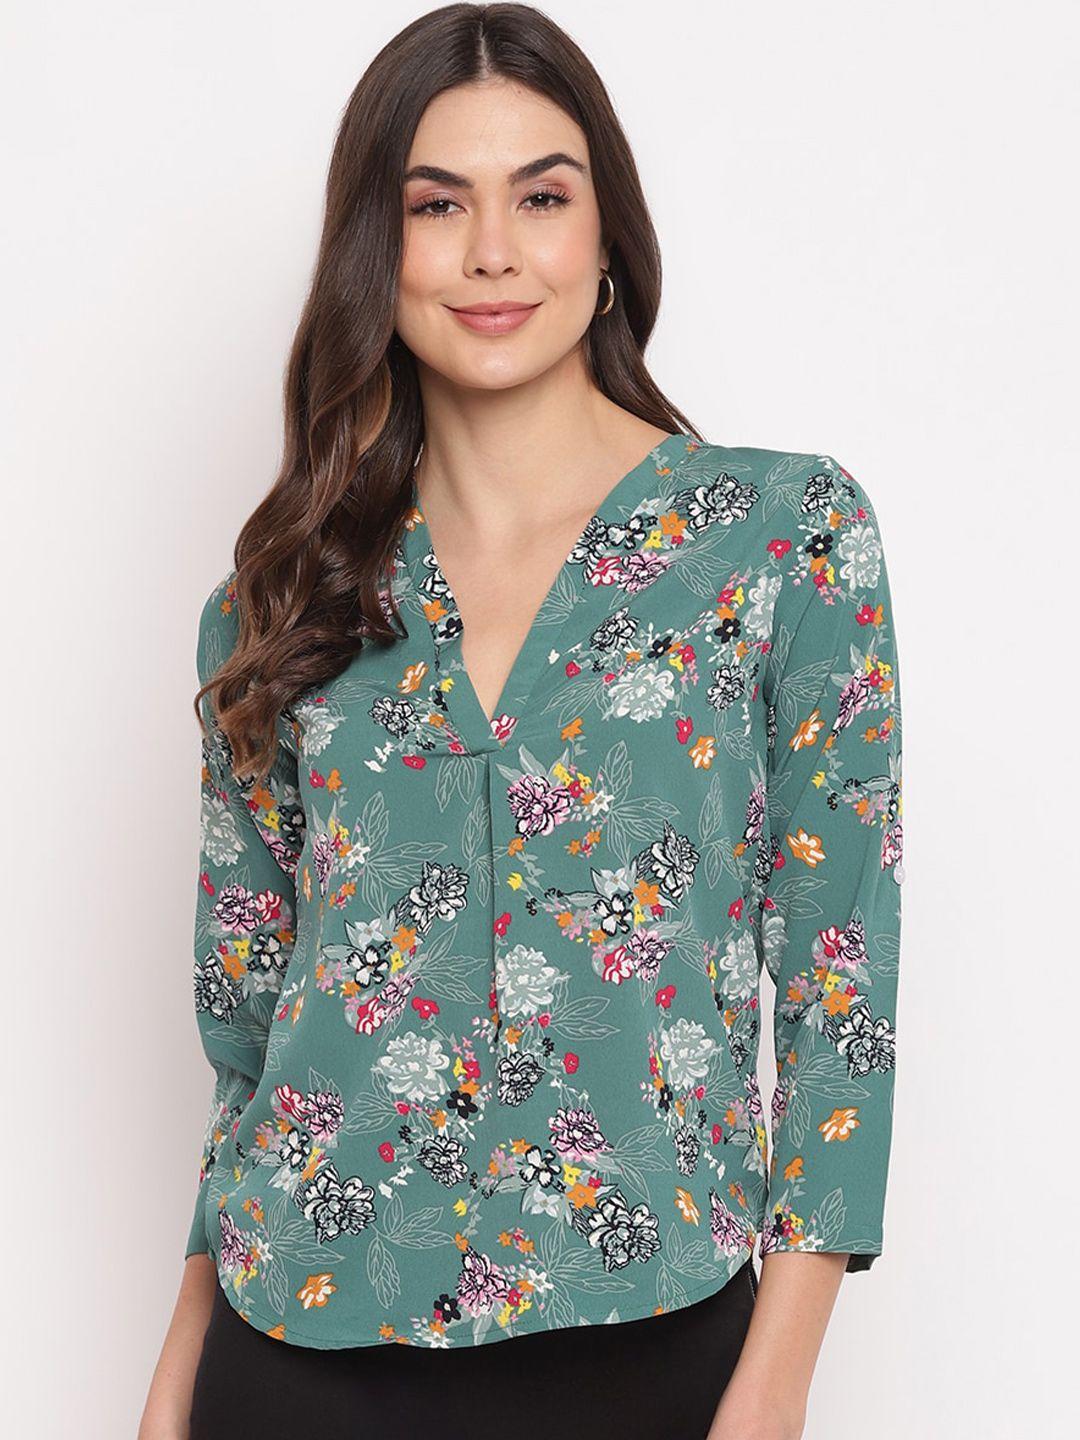 mayra-floral-print-crepe-shirt-style-top